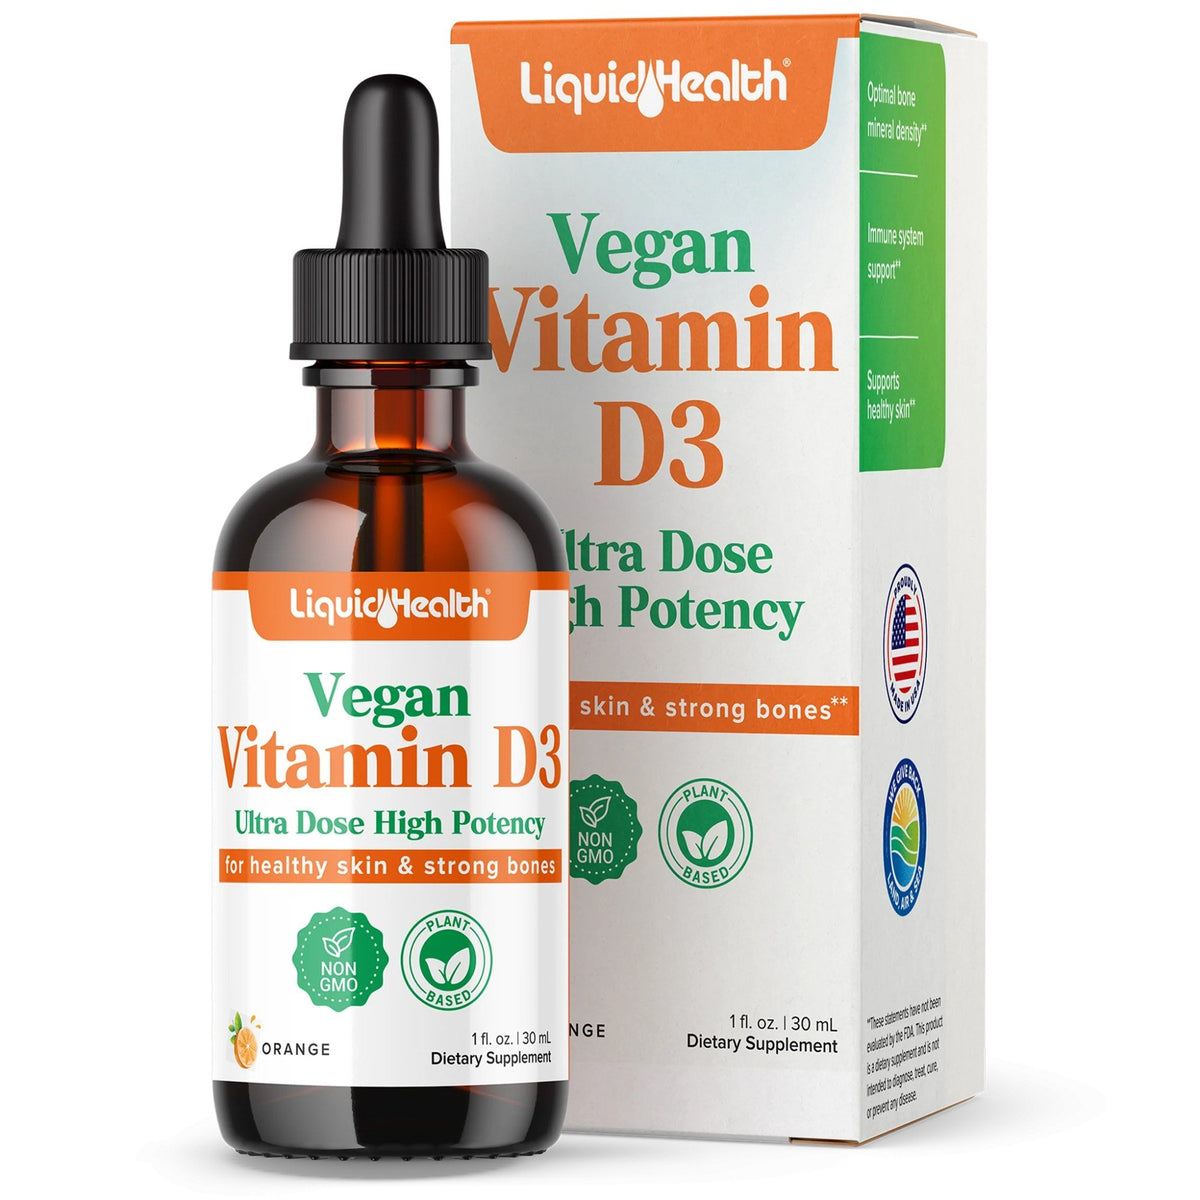 Liquid Health Vegan Vitamin D3 Drops 1 oz Liquid